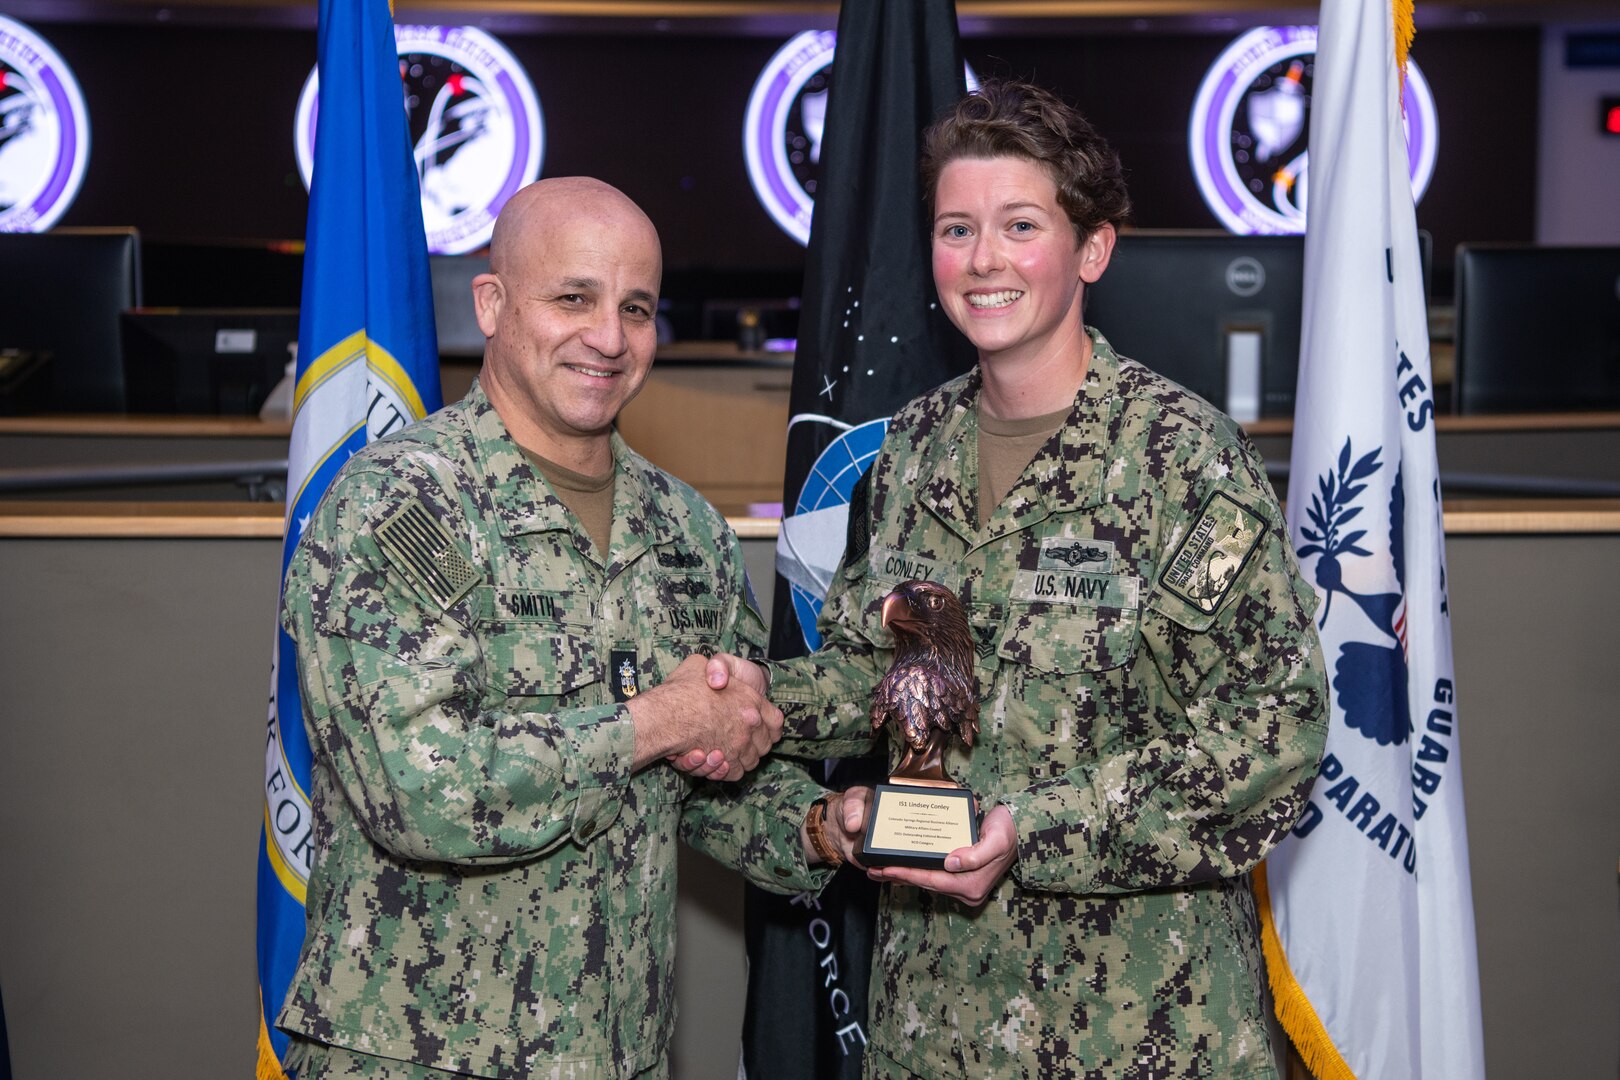 Navy leader recognizes NCO